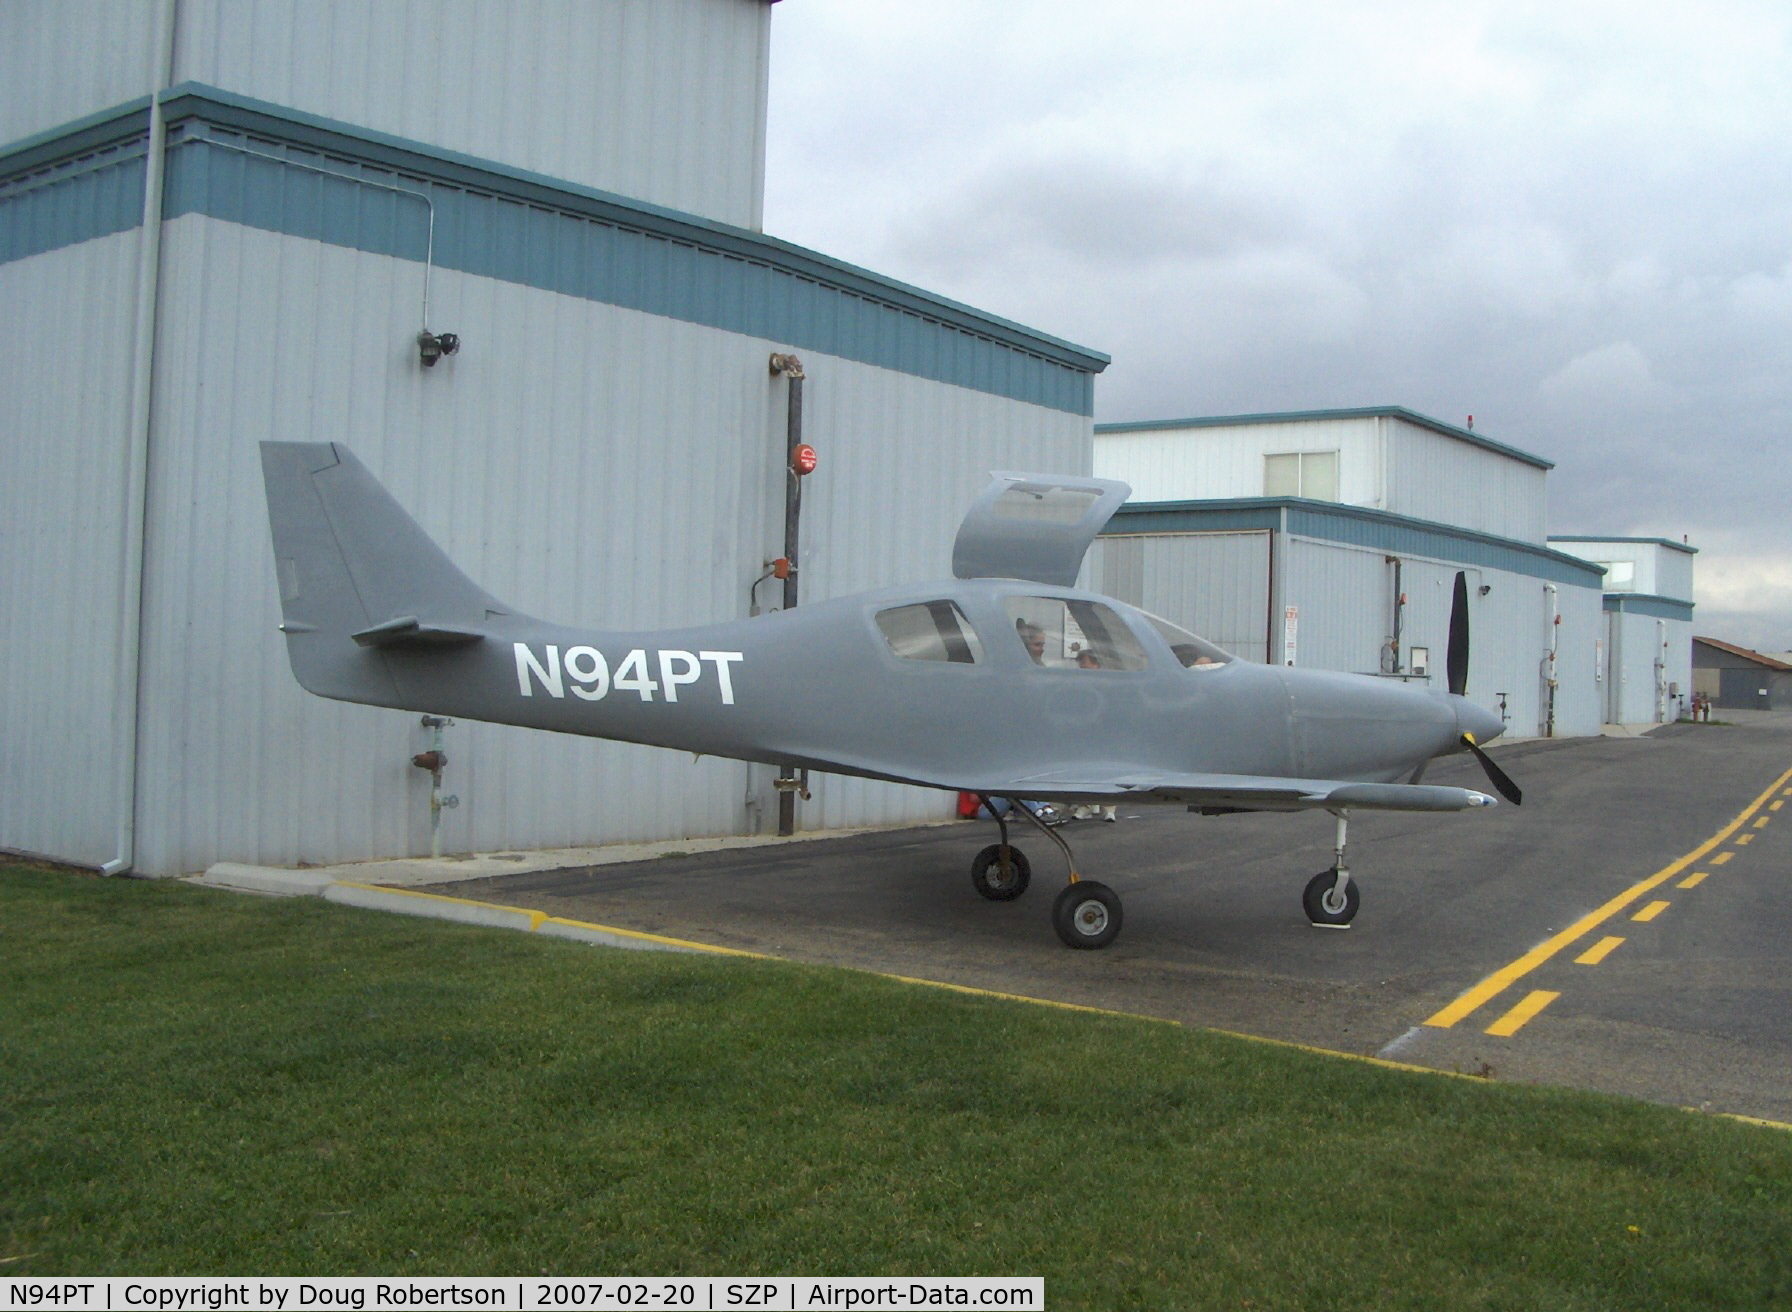 N94PT, 2006 Lancair IV C/N LIV-494, 2006 Tackabury LANCAIR IV, Continental TSIO-550 350 Hp, CS tri-blade prop, retractible gear, dual side stick control